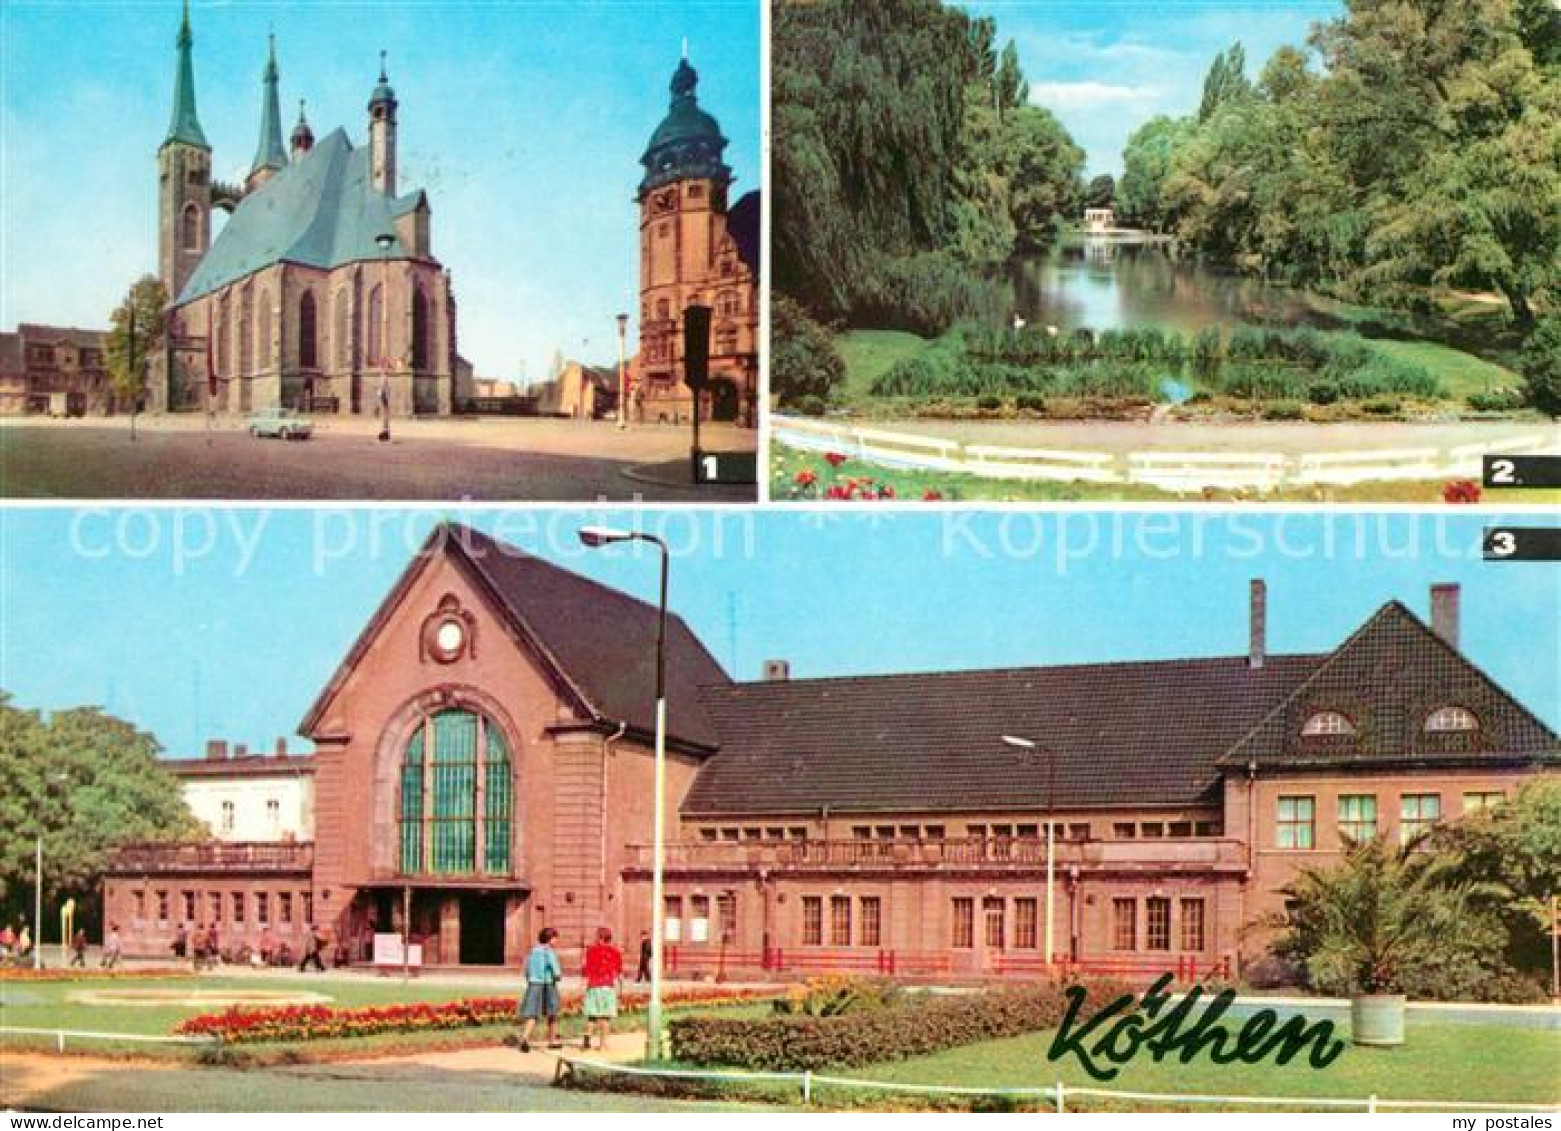 73018996 Koethen Anhalt Marktplatz St Jakobskirche Rathaus Hubertusteich Bahnhof - Köthen (Anhalt)